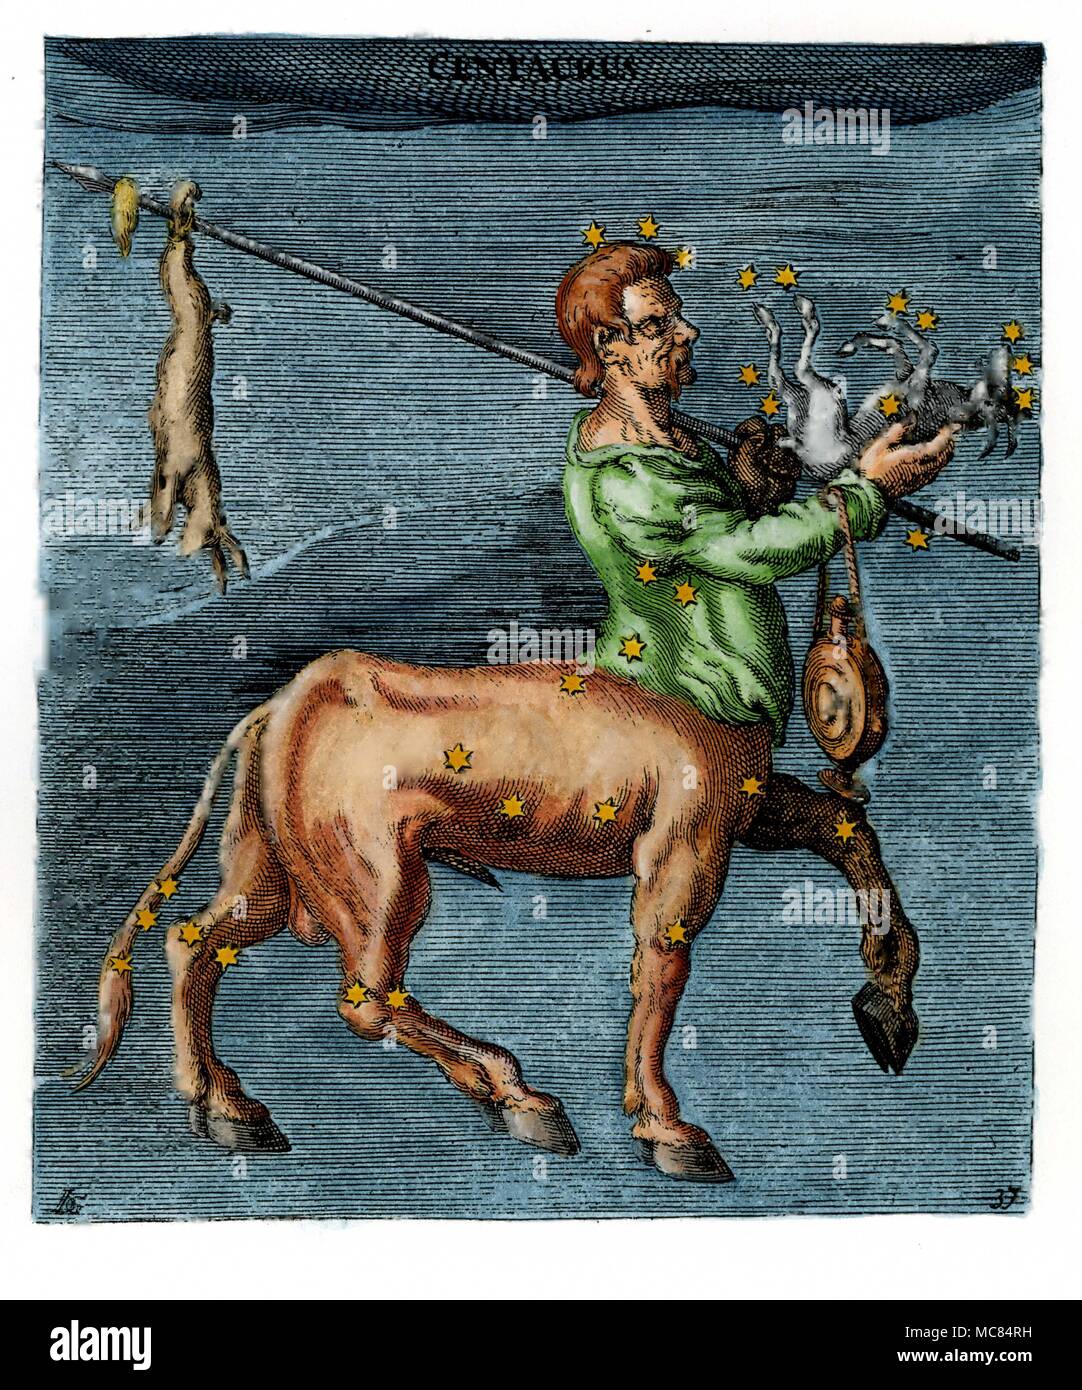 La constellation du Centaure, dangling Bestia - un dix-septième siècle illustration à la main, basé sur le neuvième siècle illumination dans l'Aratus à Leyde. Aratus était né vers 315 avant J.-C., et a écrit son livre sur les constellations pour la règle de Macédoine. Banque D'Images